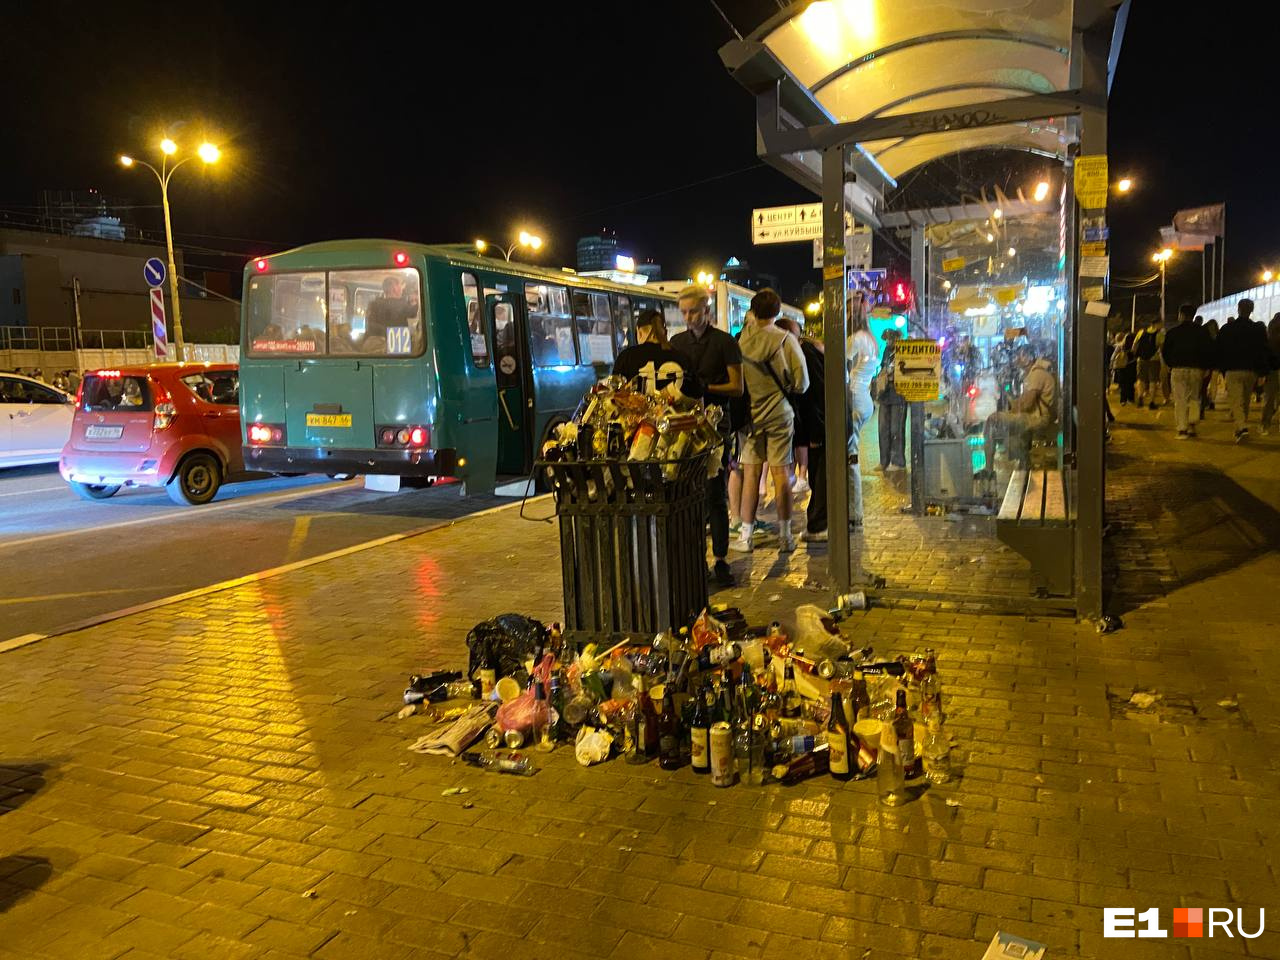 Праздник прошел, а мусор остался: Екатеринбург потонул в куче бутылок и упаковок